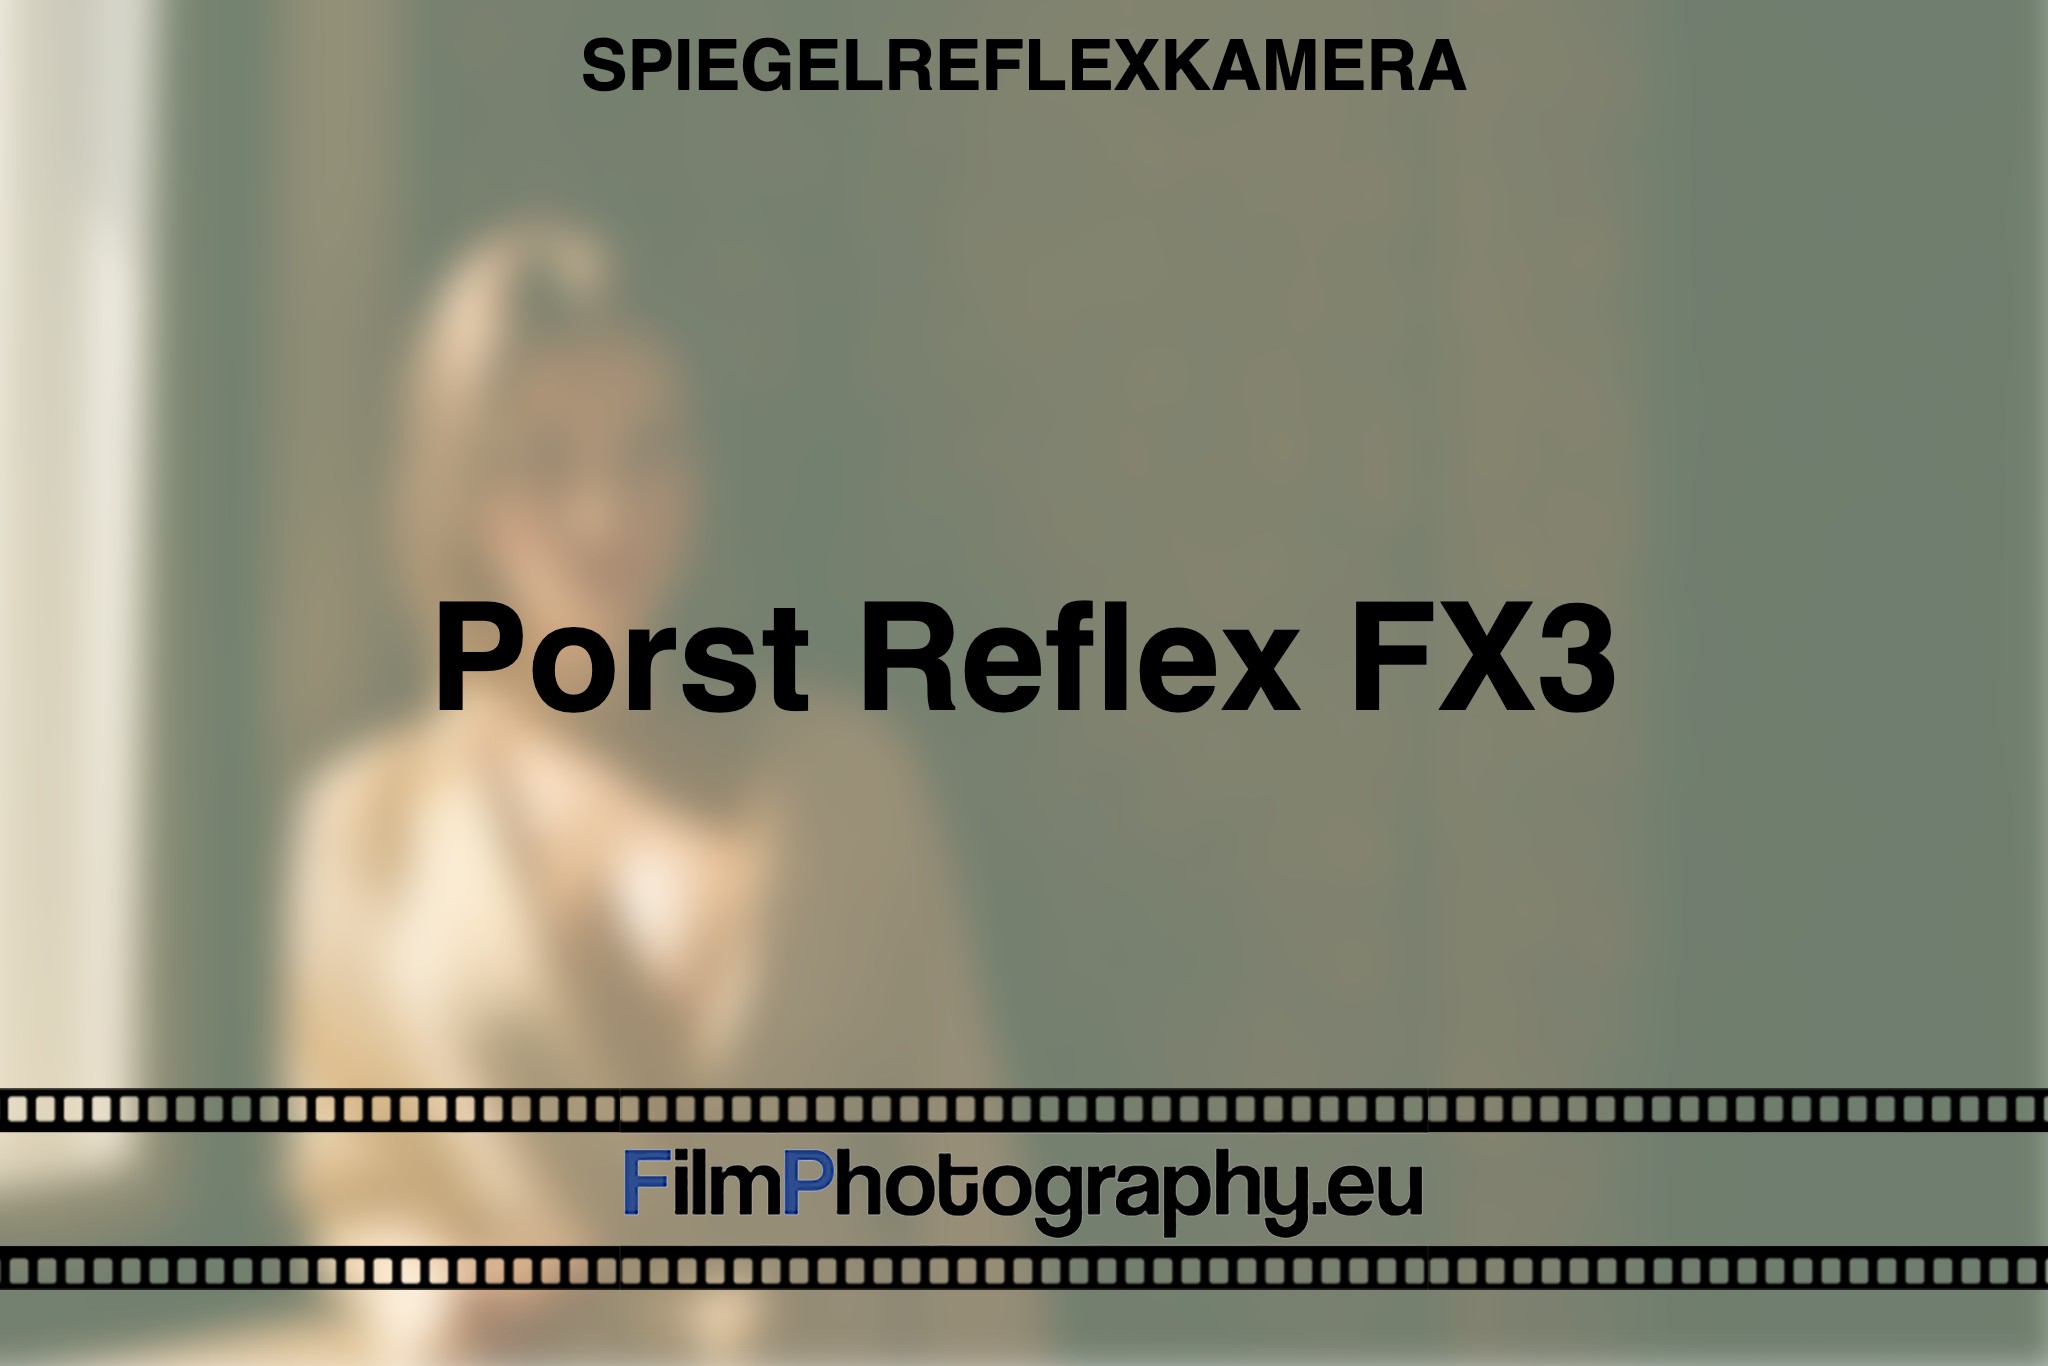 porst-reflex-fx3-spiegelreflexkamera-bnv